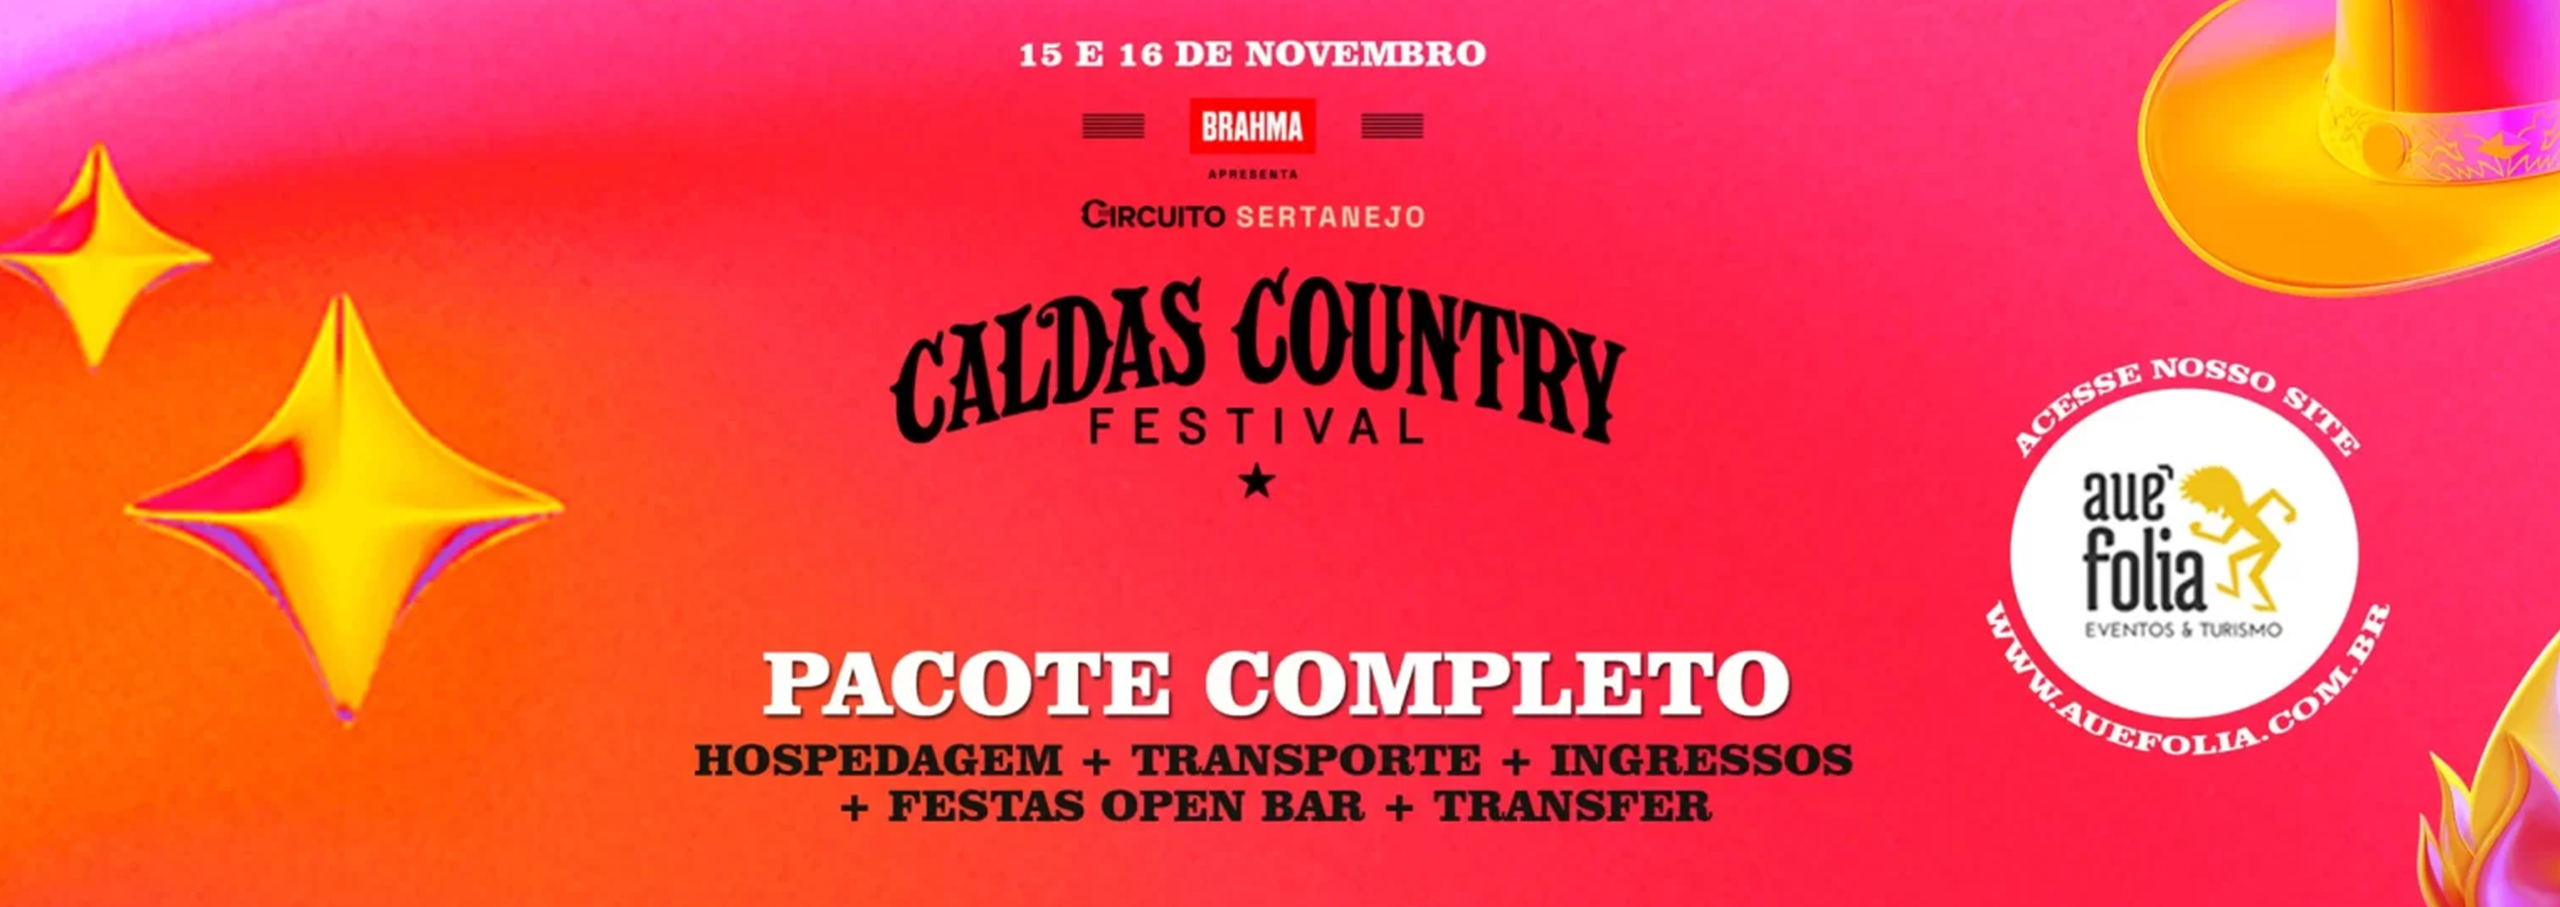 calda-country-excursao-onibus-hotel-hospedagem-banner